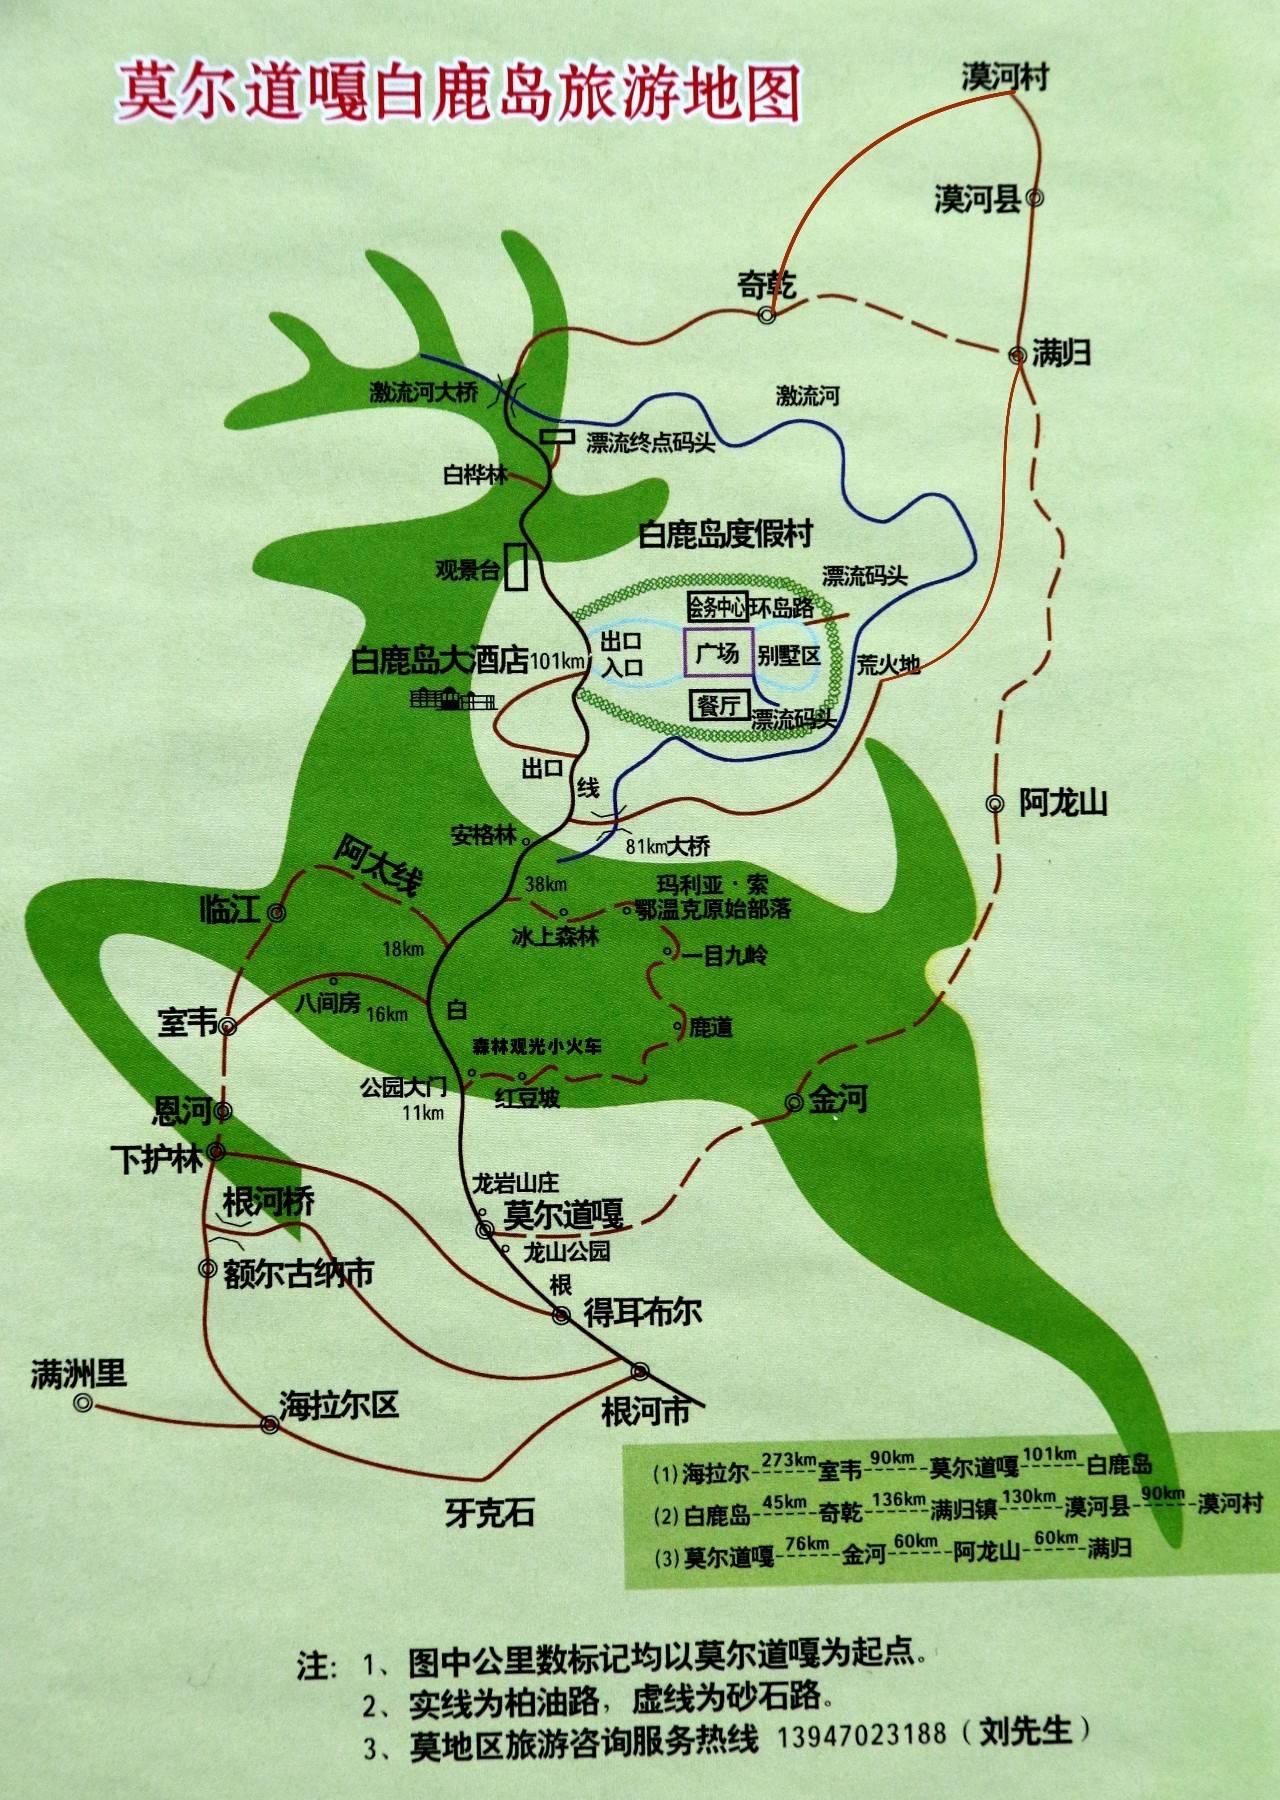 9月9日中国(内蒙古大兴安岭)森林旅游节—莫尔道嘎金秋